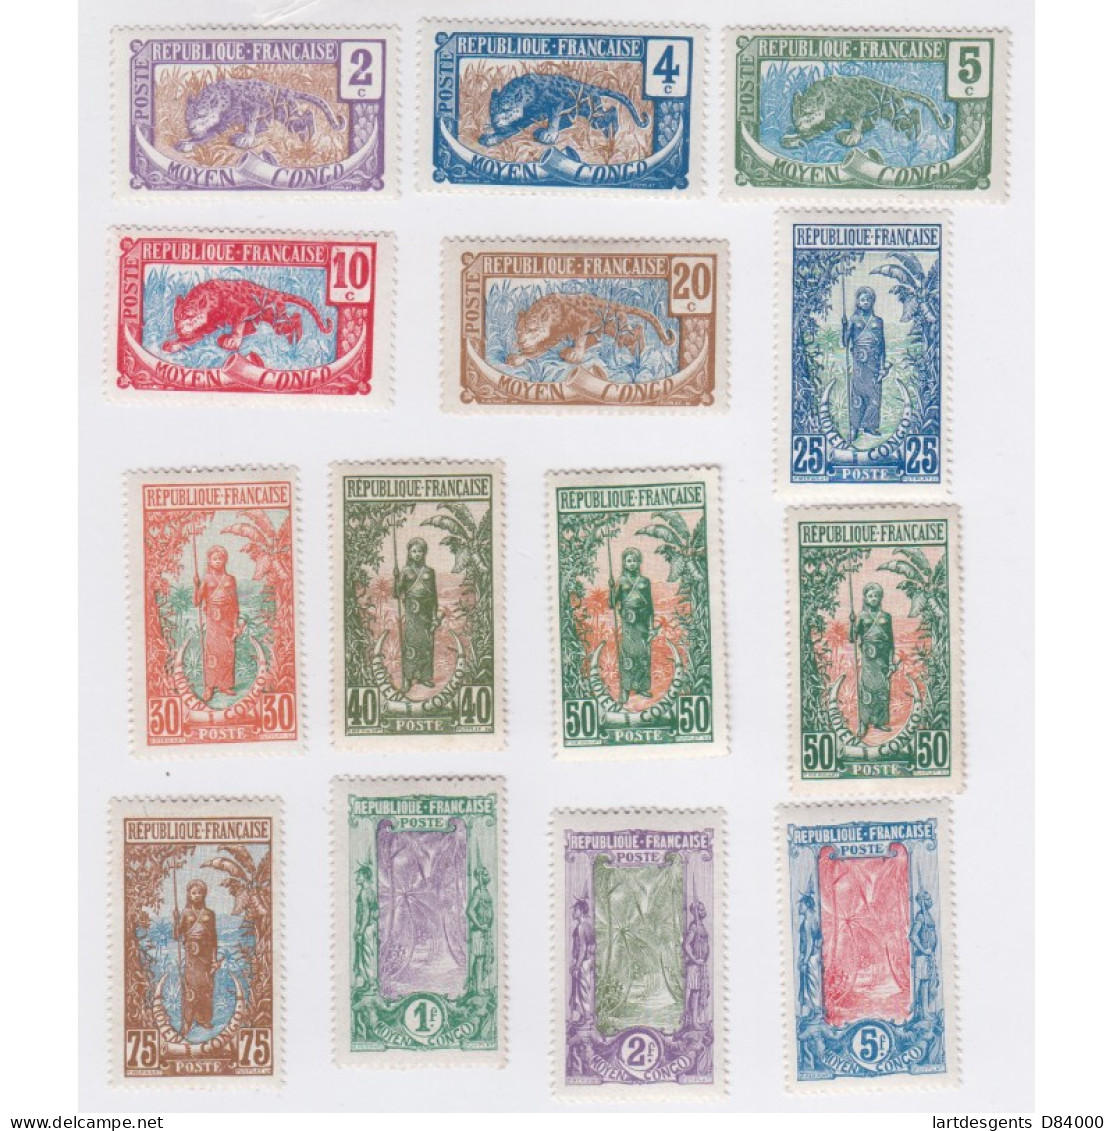 Moyen Congo - 14 Timbres N°48 à N°64 - Neufs* 1907-1917 Colonie Française, Lartdesgents.fr - Covers & Documents